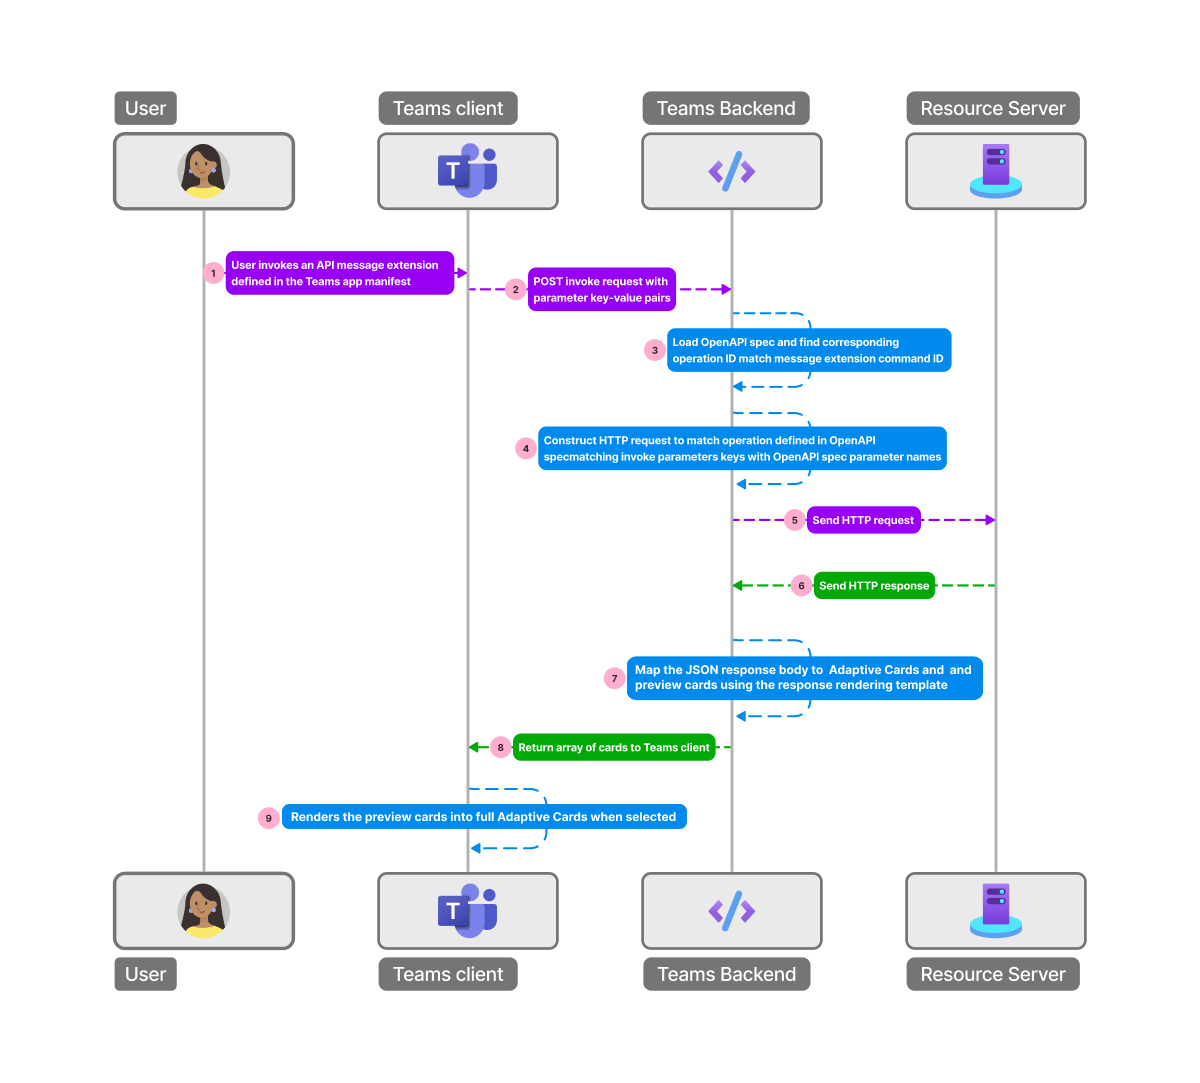 Снимок экрана: поток описания OpenAPI от пользователя к Teams и обратно пользователю.